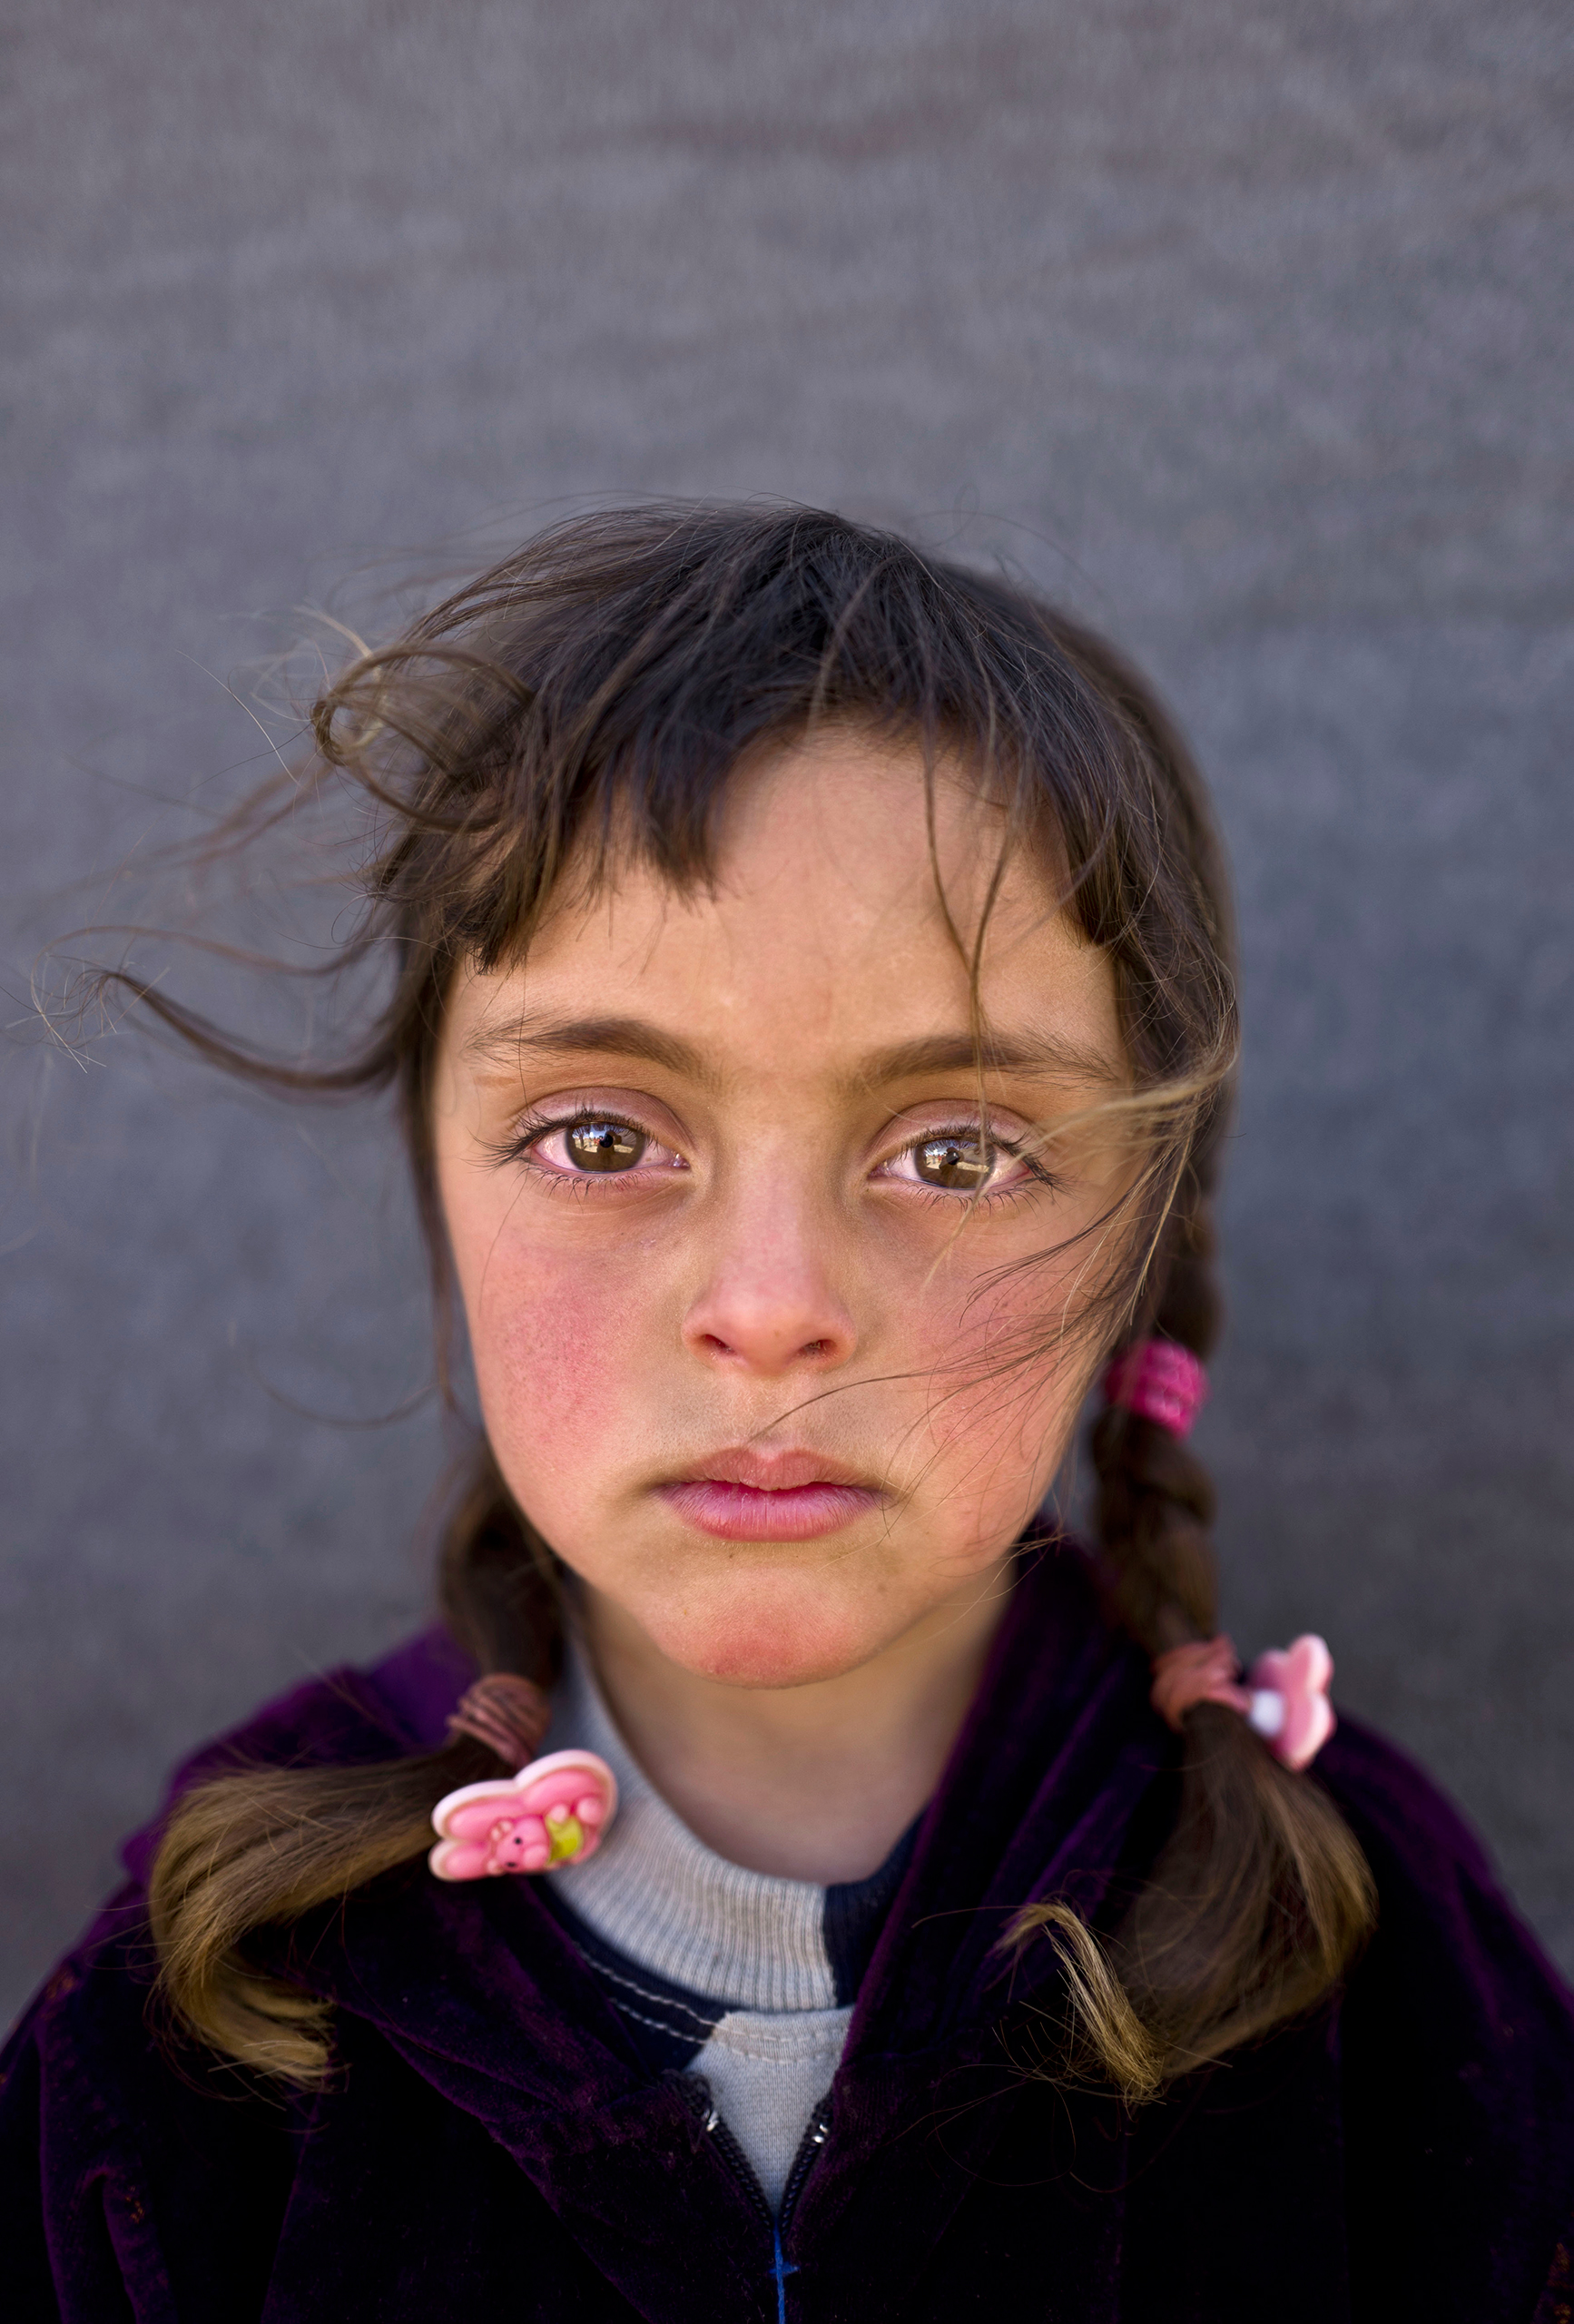 zahra-mahmoud-syrian-refugee-girl-2016